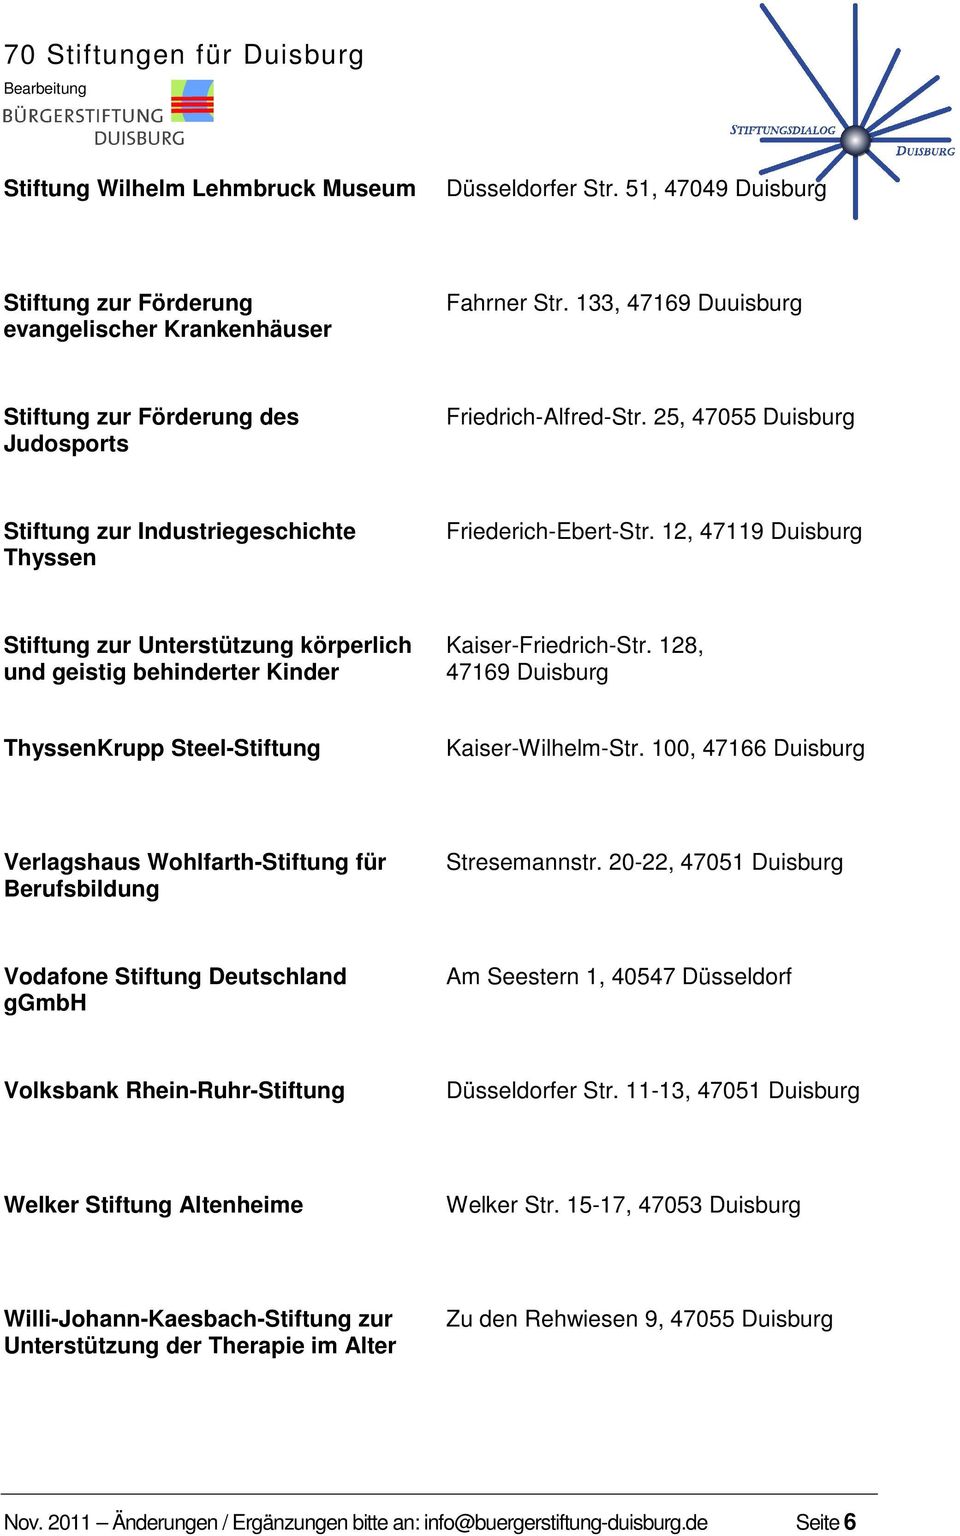 12, 47119 Duisburg Stiftung zur Unterstützung körperlich und geistig behinderter Kinder Kaiser-Friedrich-Str. 128, 47169 Duisburg ThyssenKrupp Steel-Stiftung Kaiser-Wilhelm-Str.